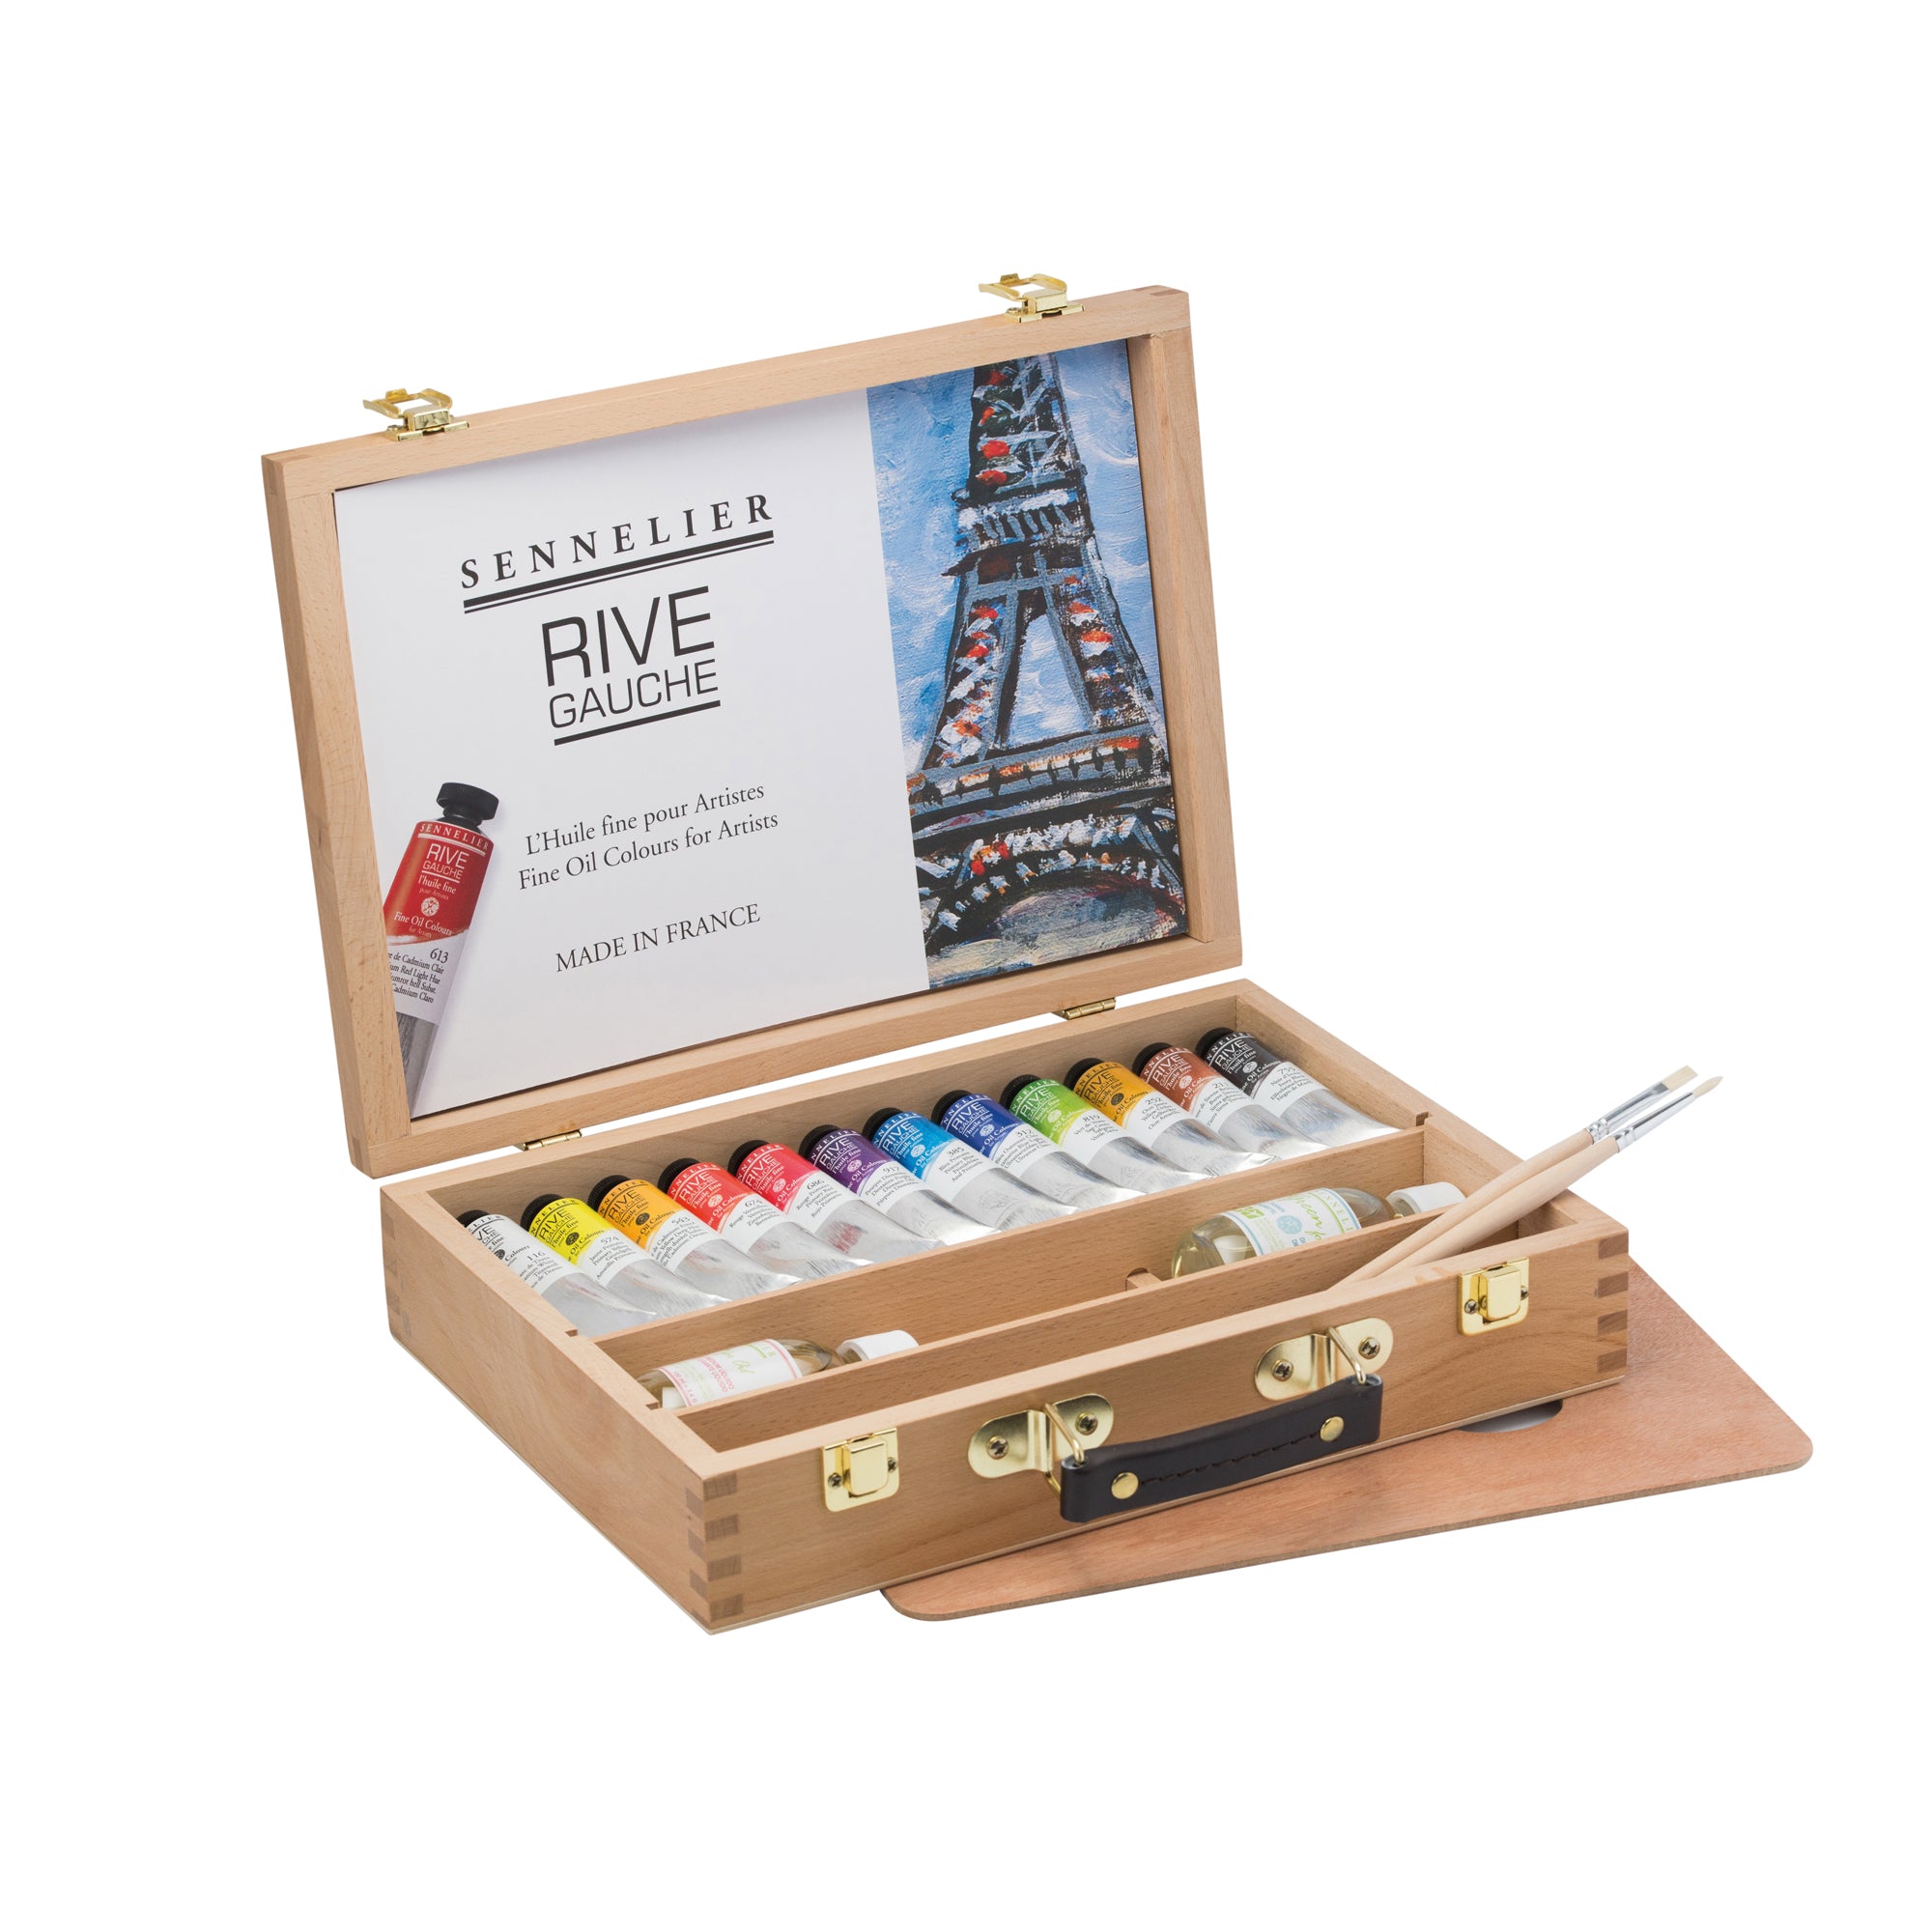 Sennelier Artist oil pastel set of 50 in luxury wood box - Best